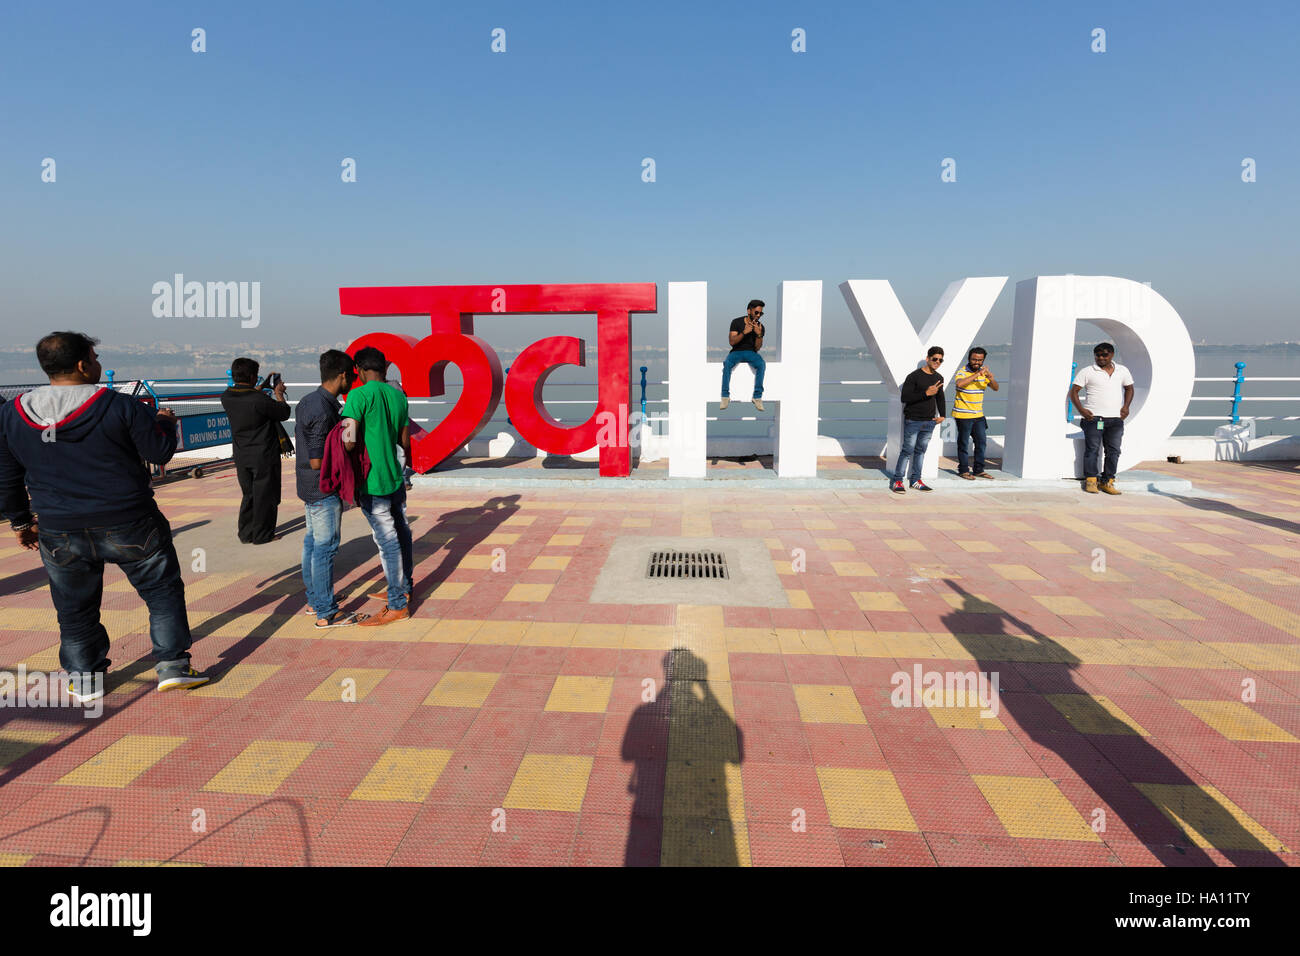 Liebe Hyd ist eine neue typographische Installation von Hitesh Malaviya & Hanif Kureshi entworfen. Stockfoto